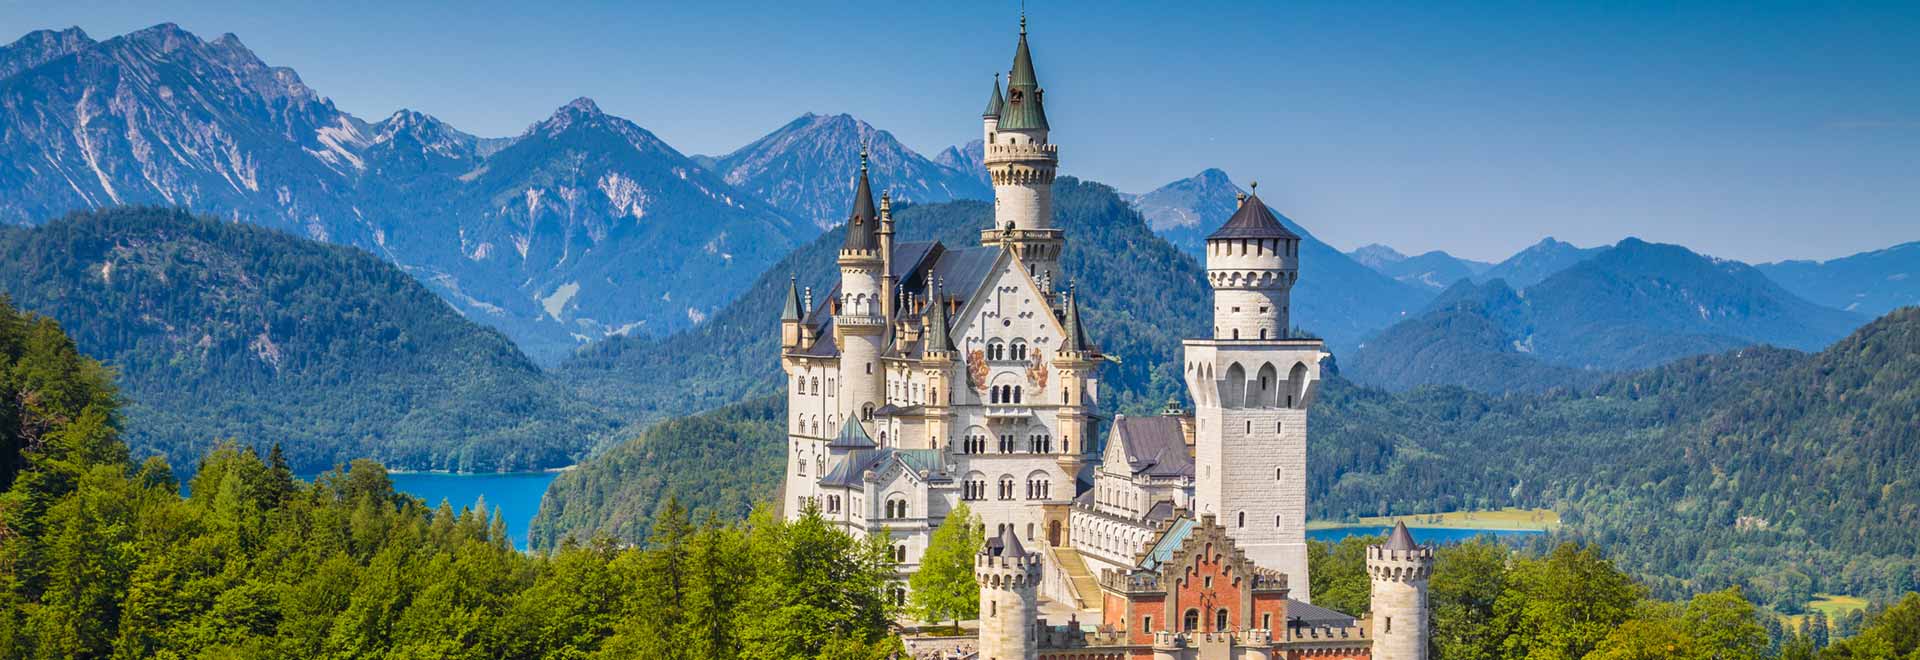 Europe Germany Bavaria Neuschwanstein Castle